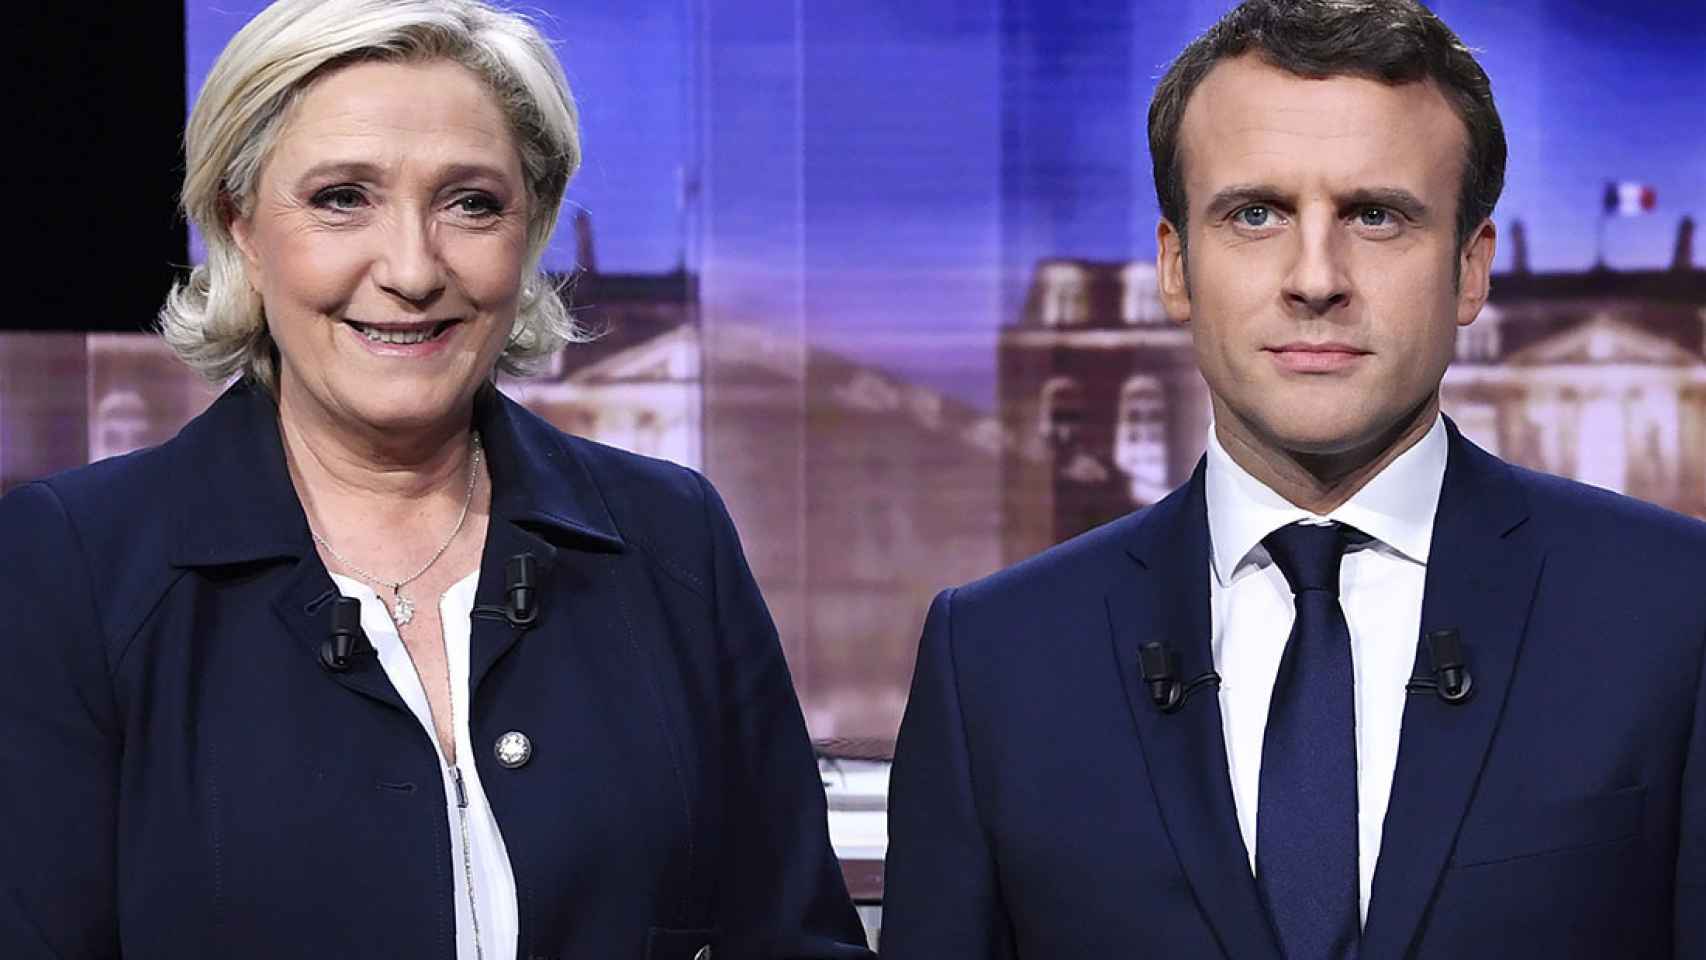 Los candidatos a la presidencia de Francia: Marine Le Pen y Emmanuel Macron.